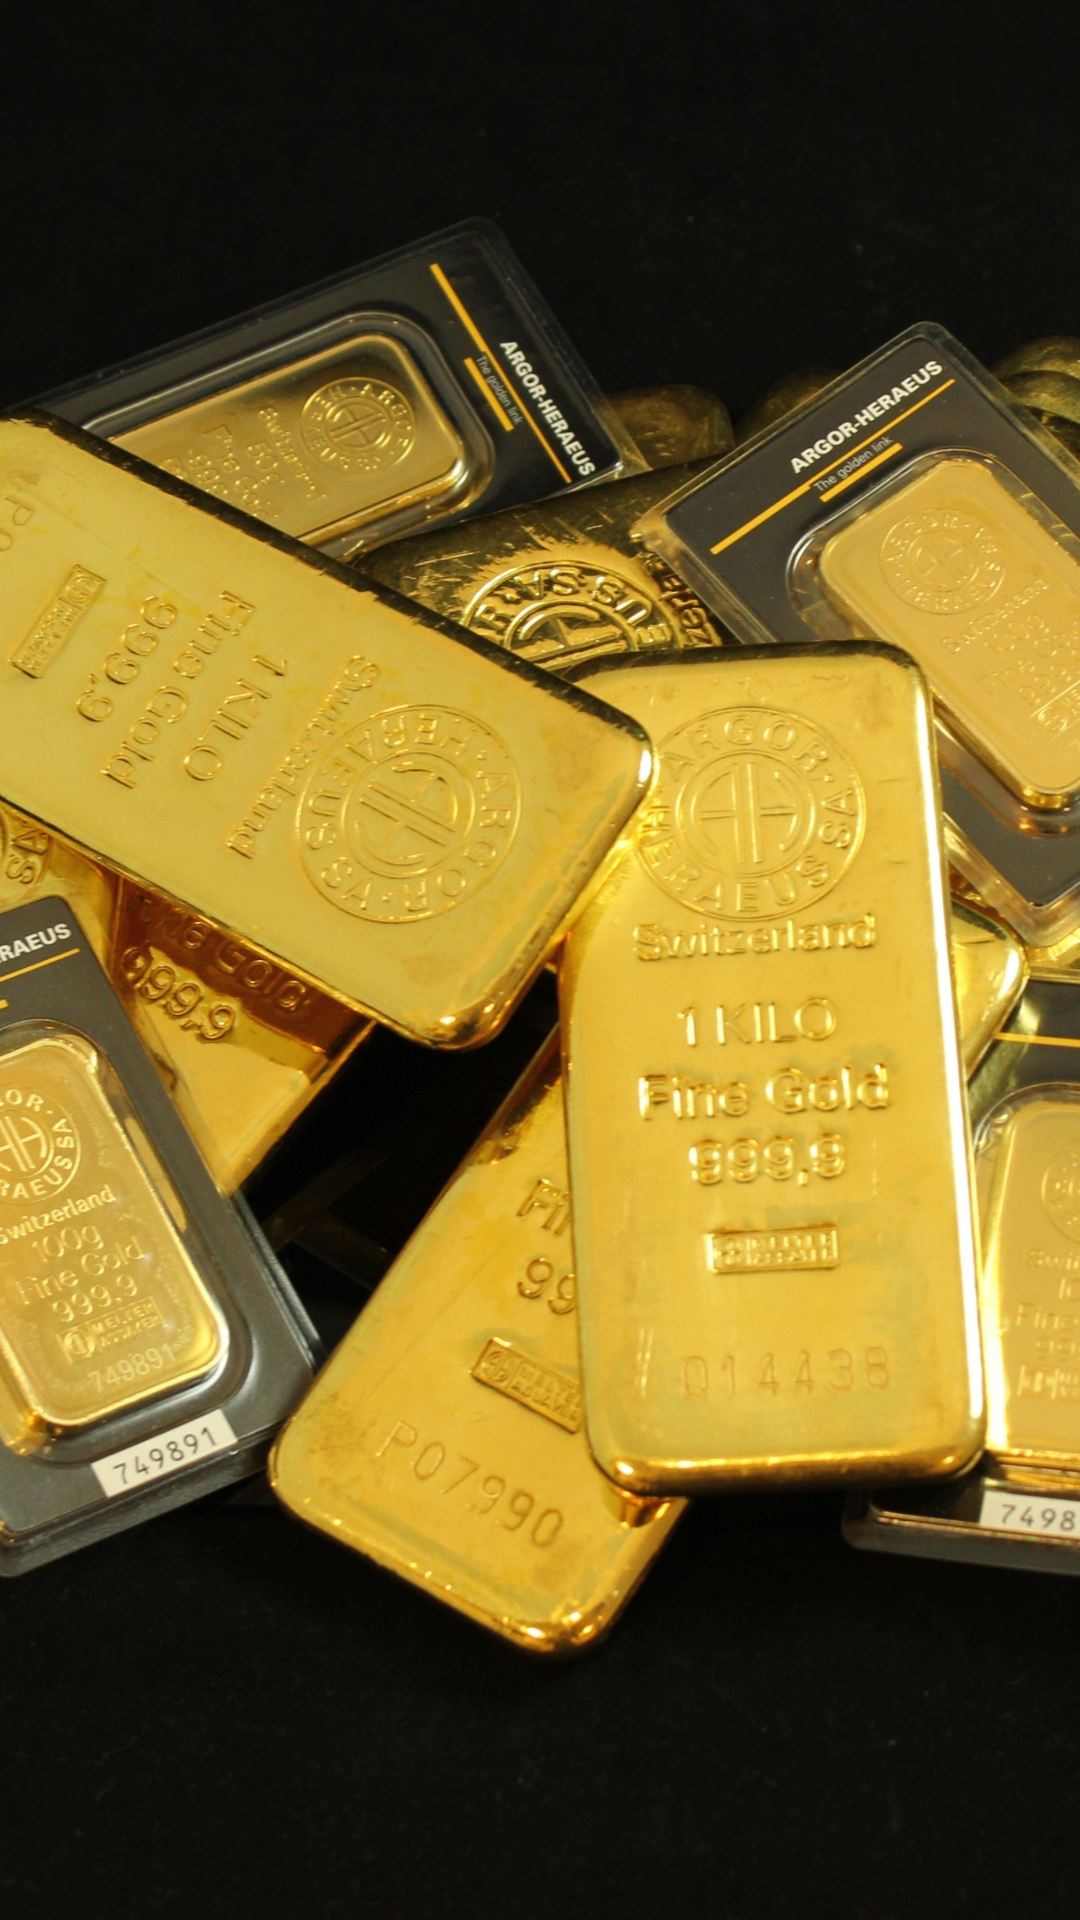 भारत में सबसे ज्यादा सोना किस राज्य में निकलता है? 